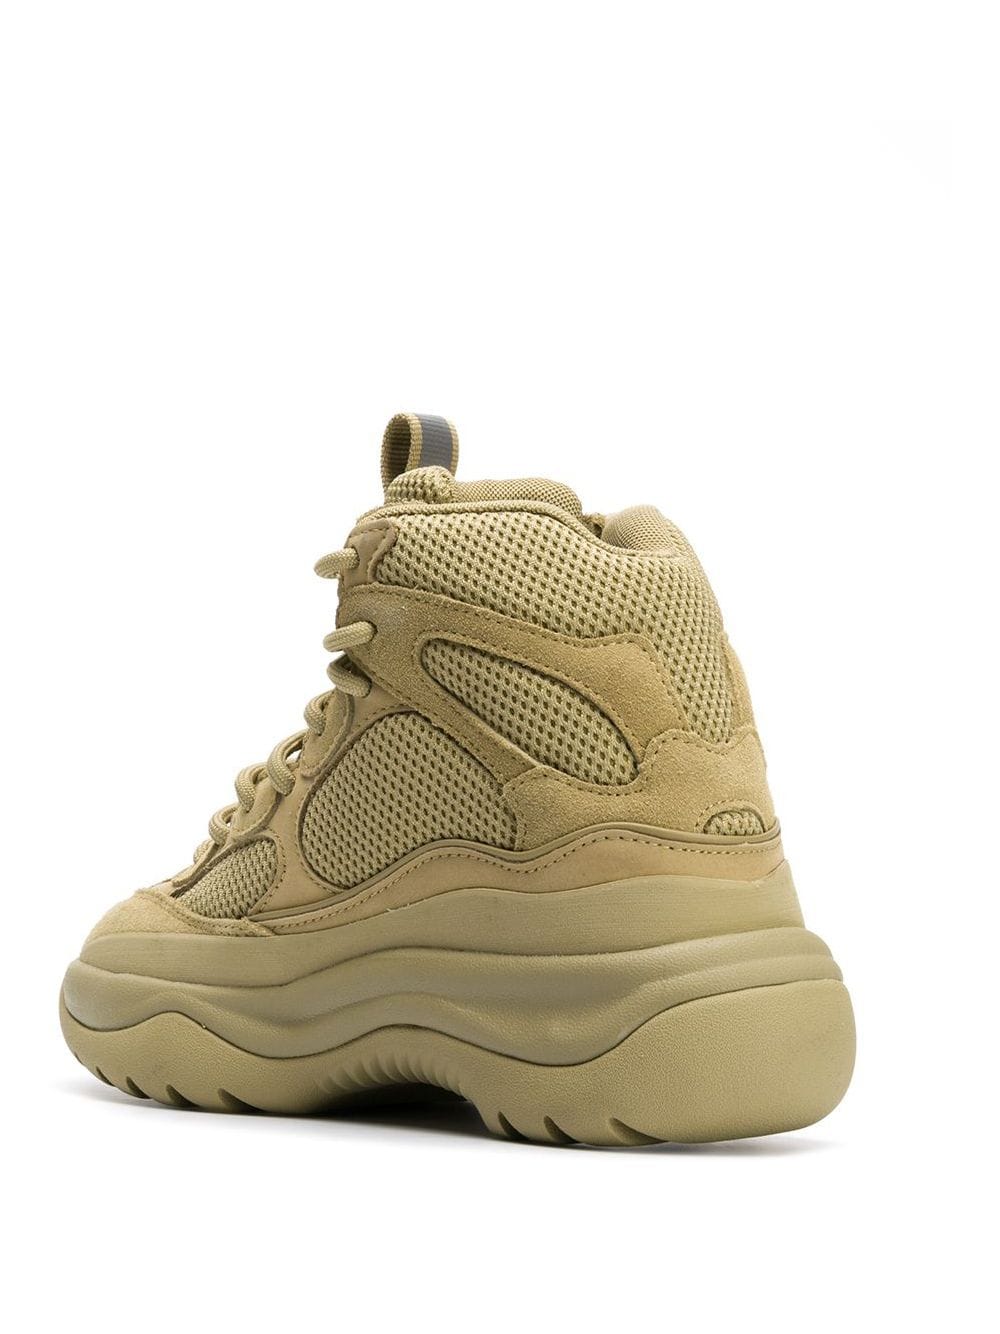 Yeezy Desert boot sneakers for men 